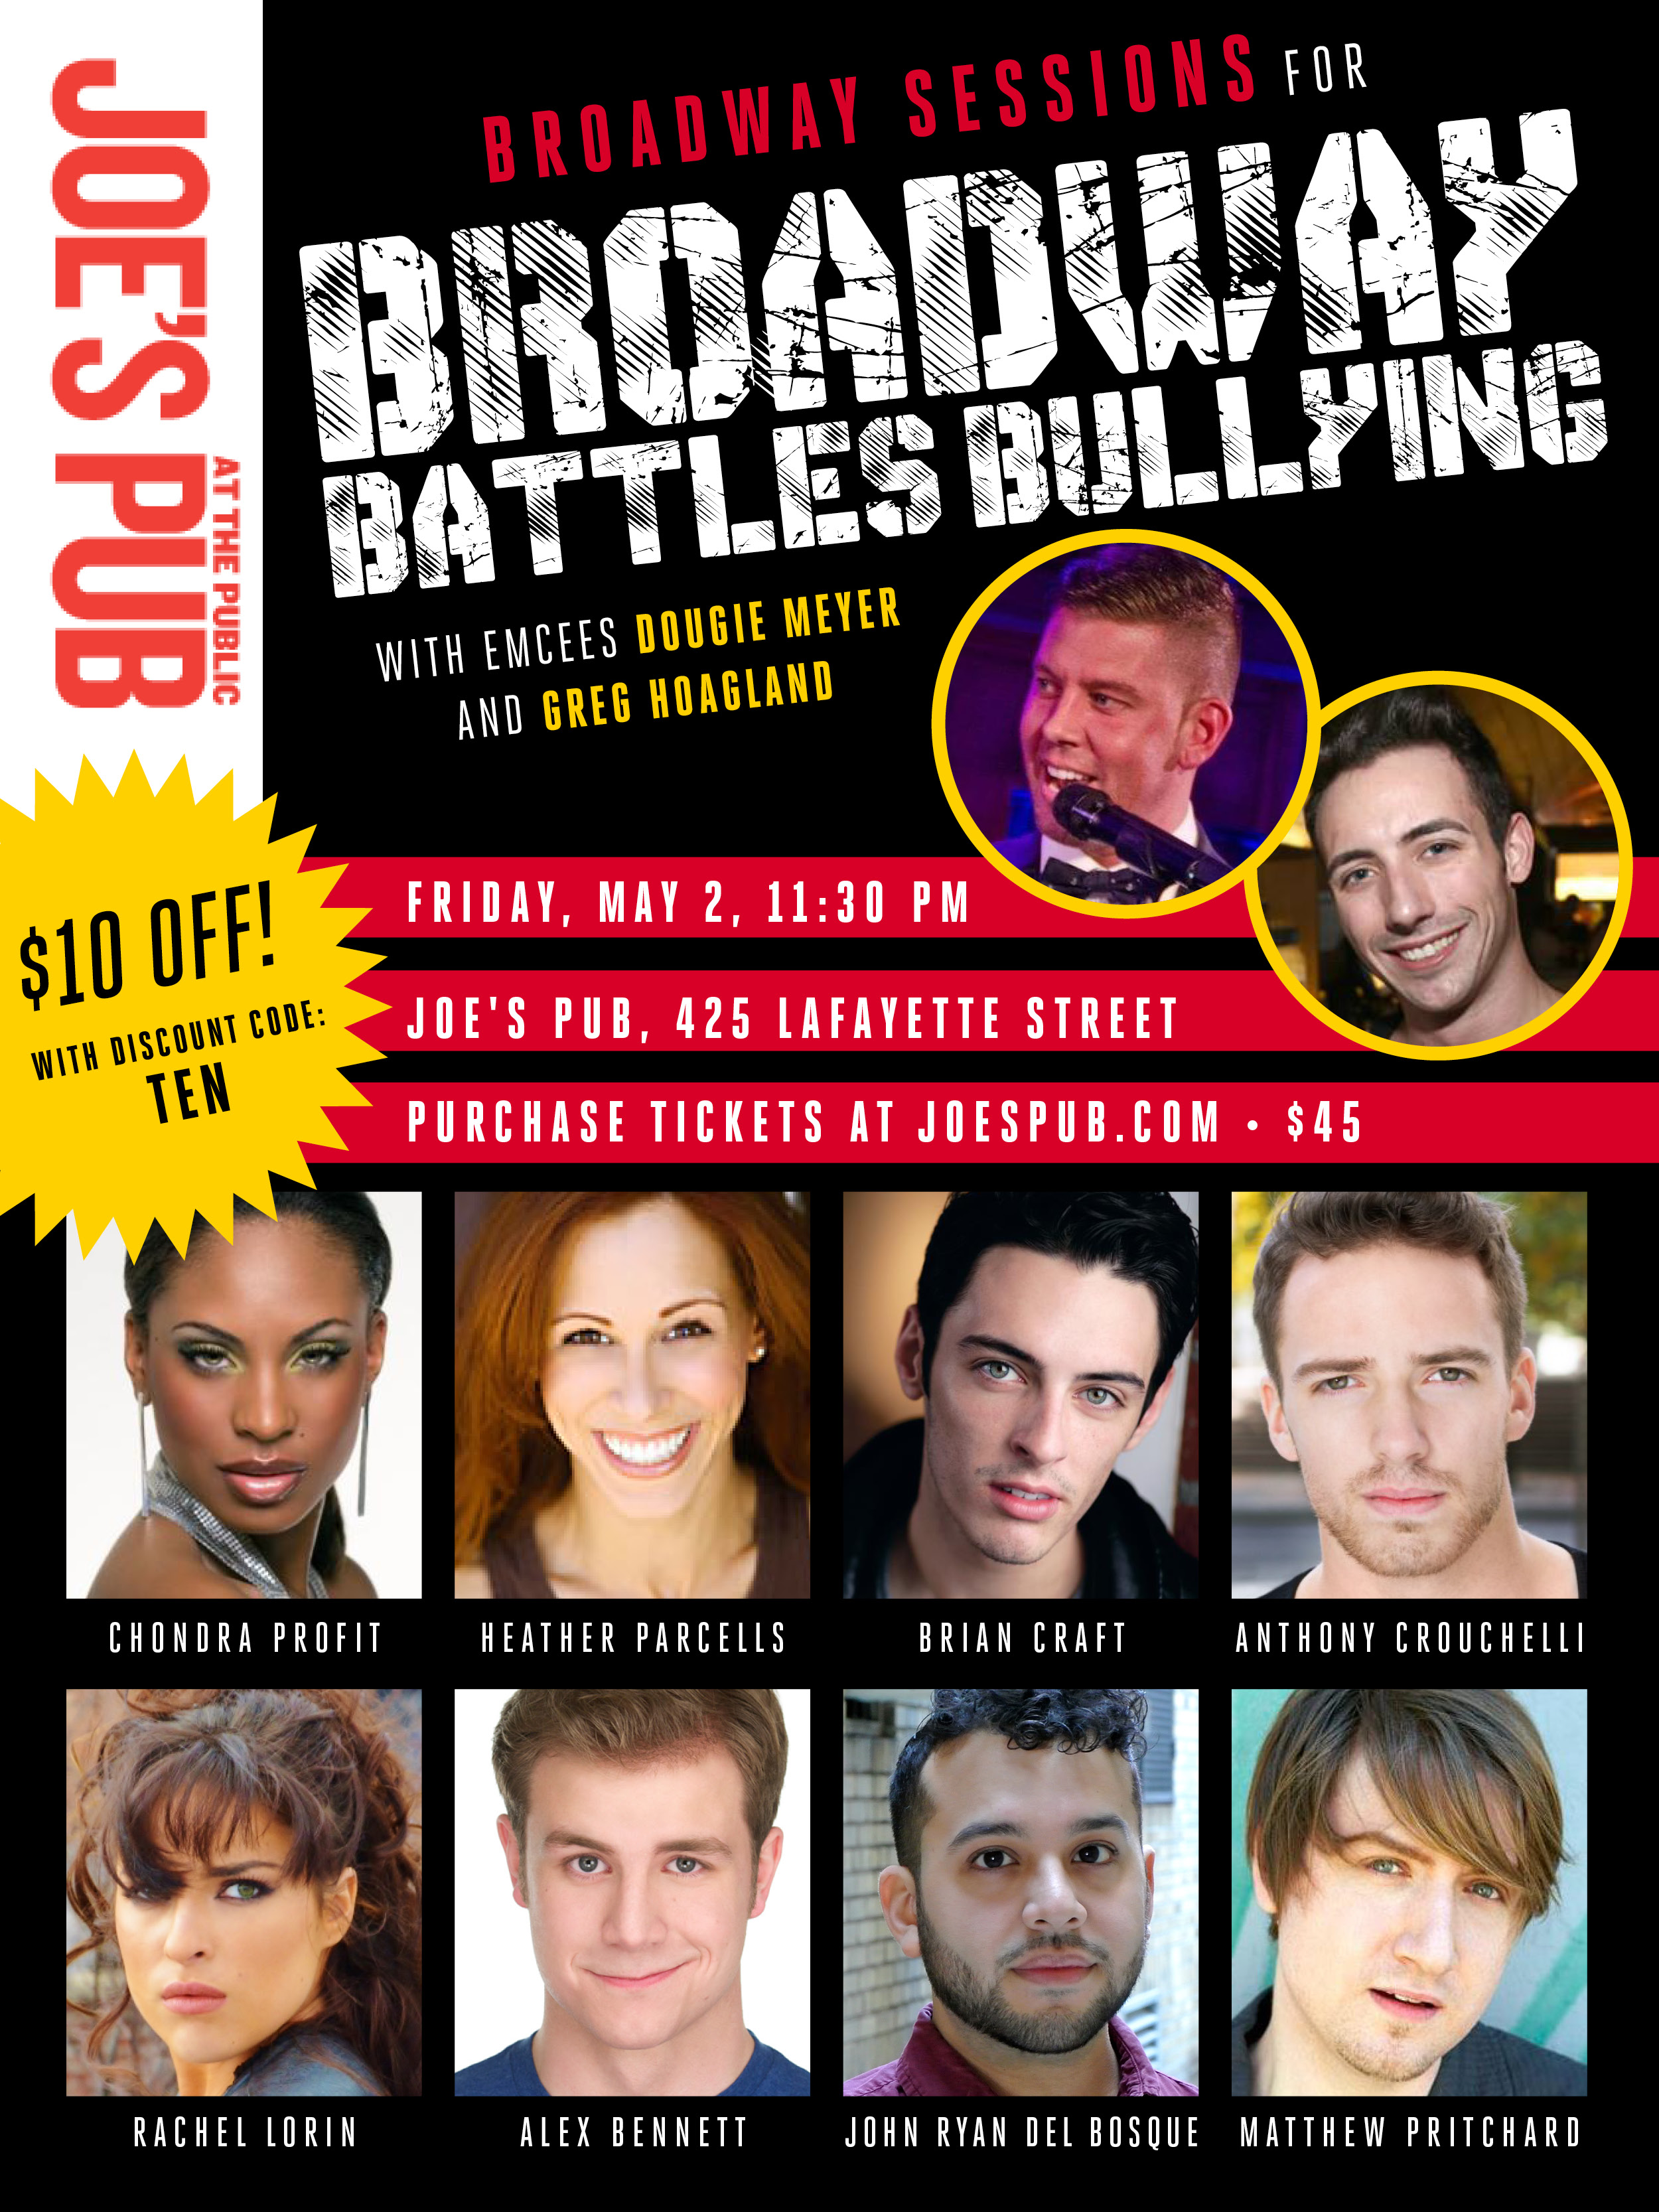  Broadway Battles Bullying at Joe’s Pub, May 2